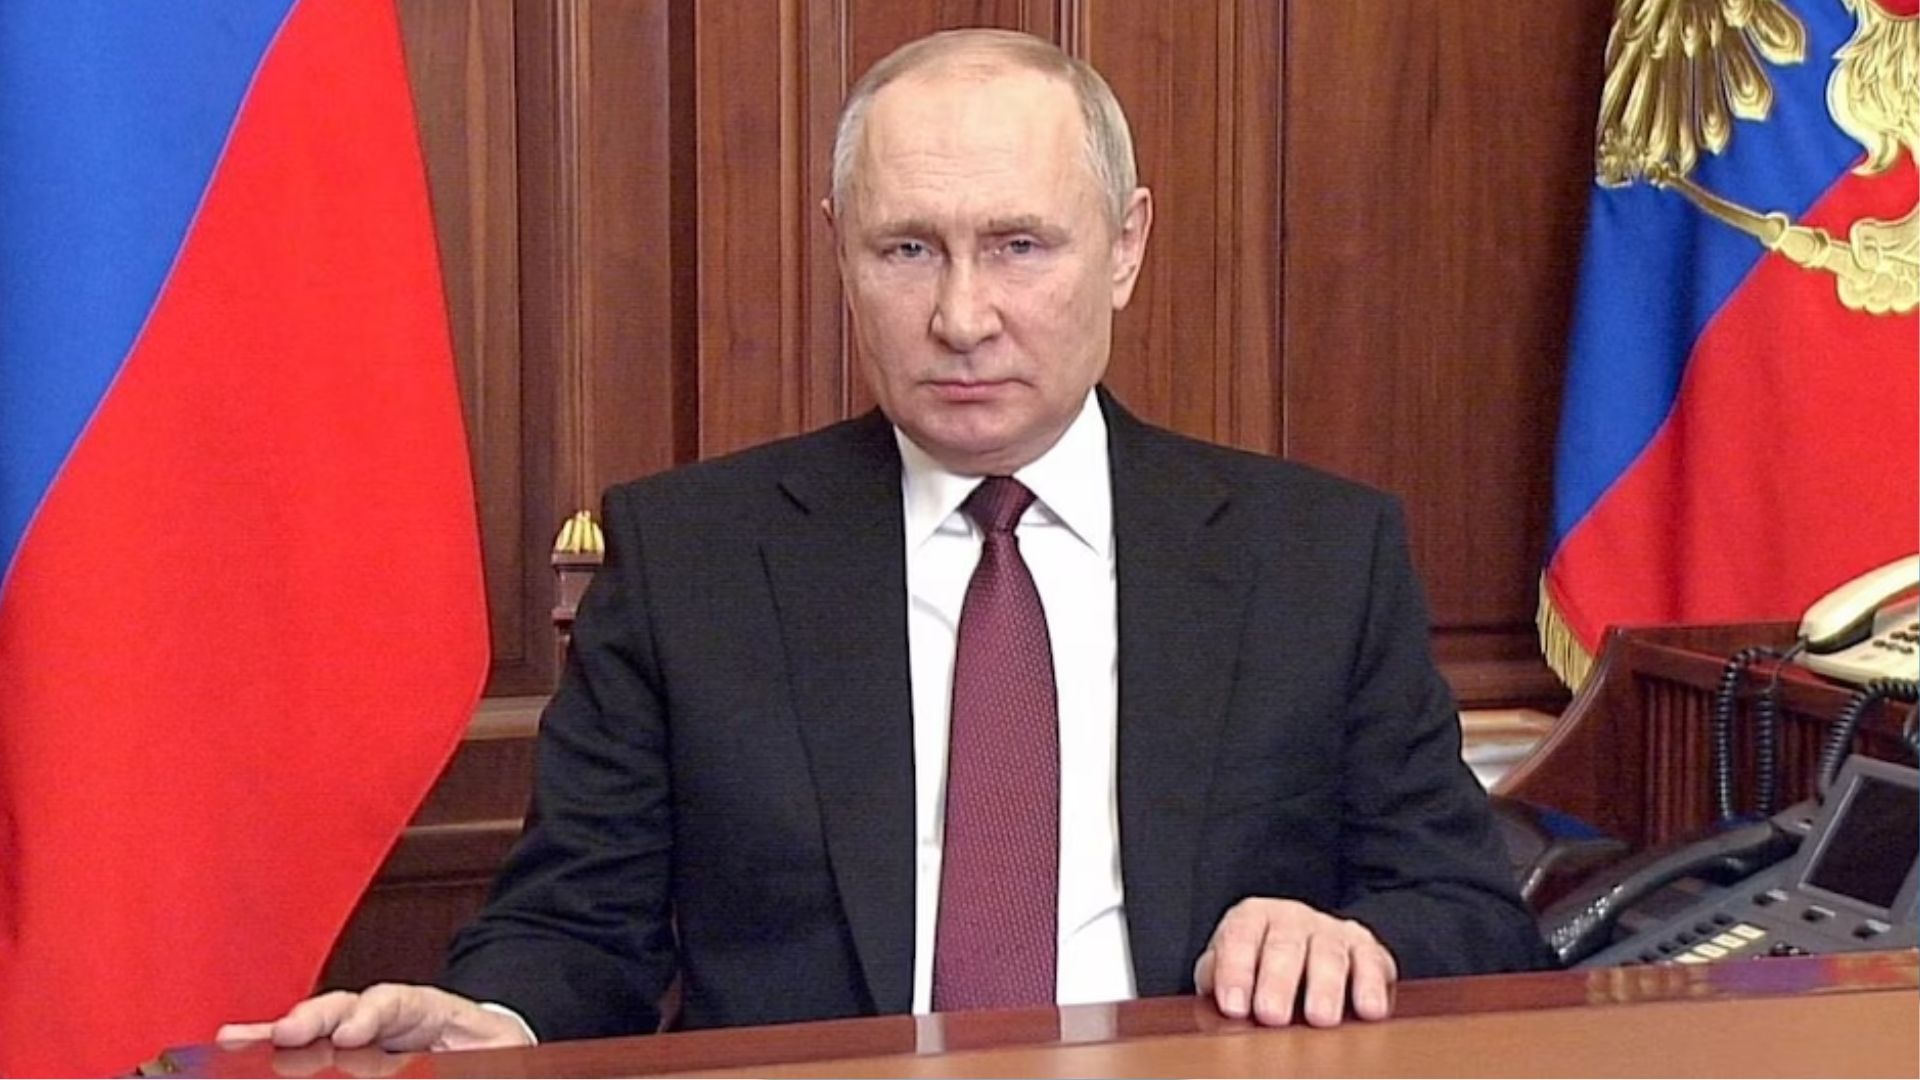 रूस में राष्ट्रपति पद के चुनाव के लिए मतदान शुरू, पुतिन की जीत लगभग तय 